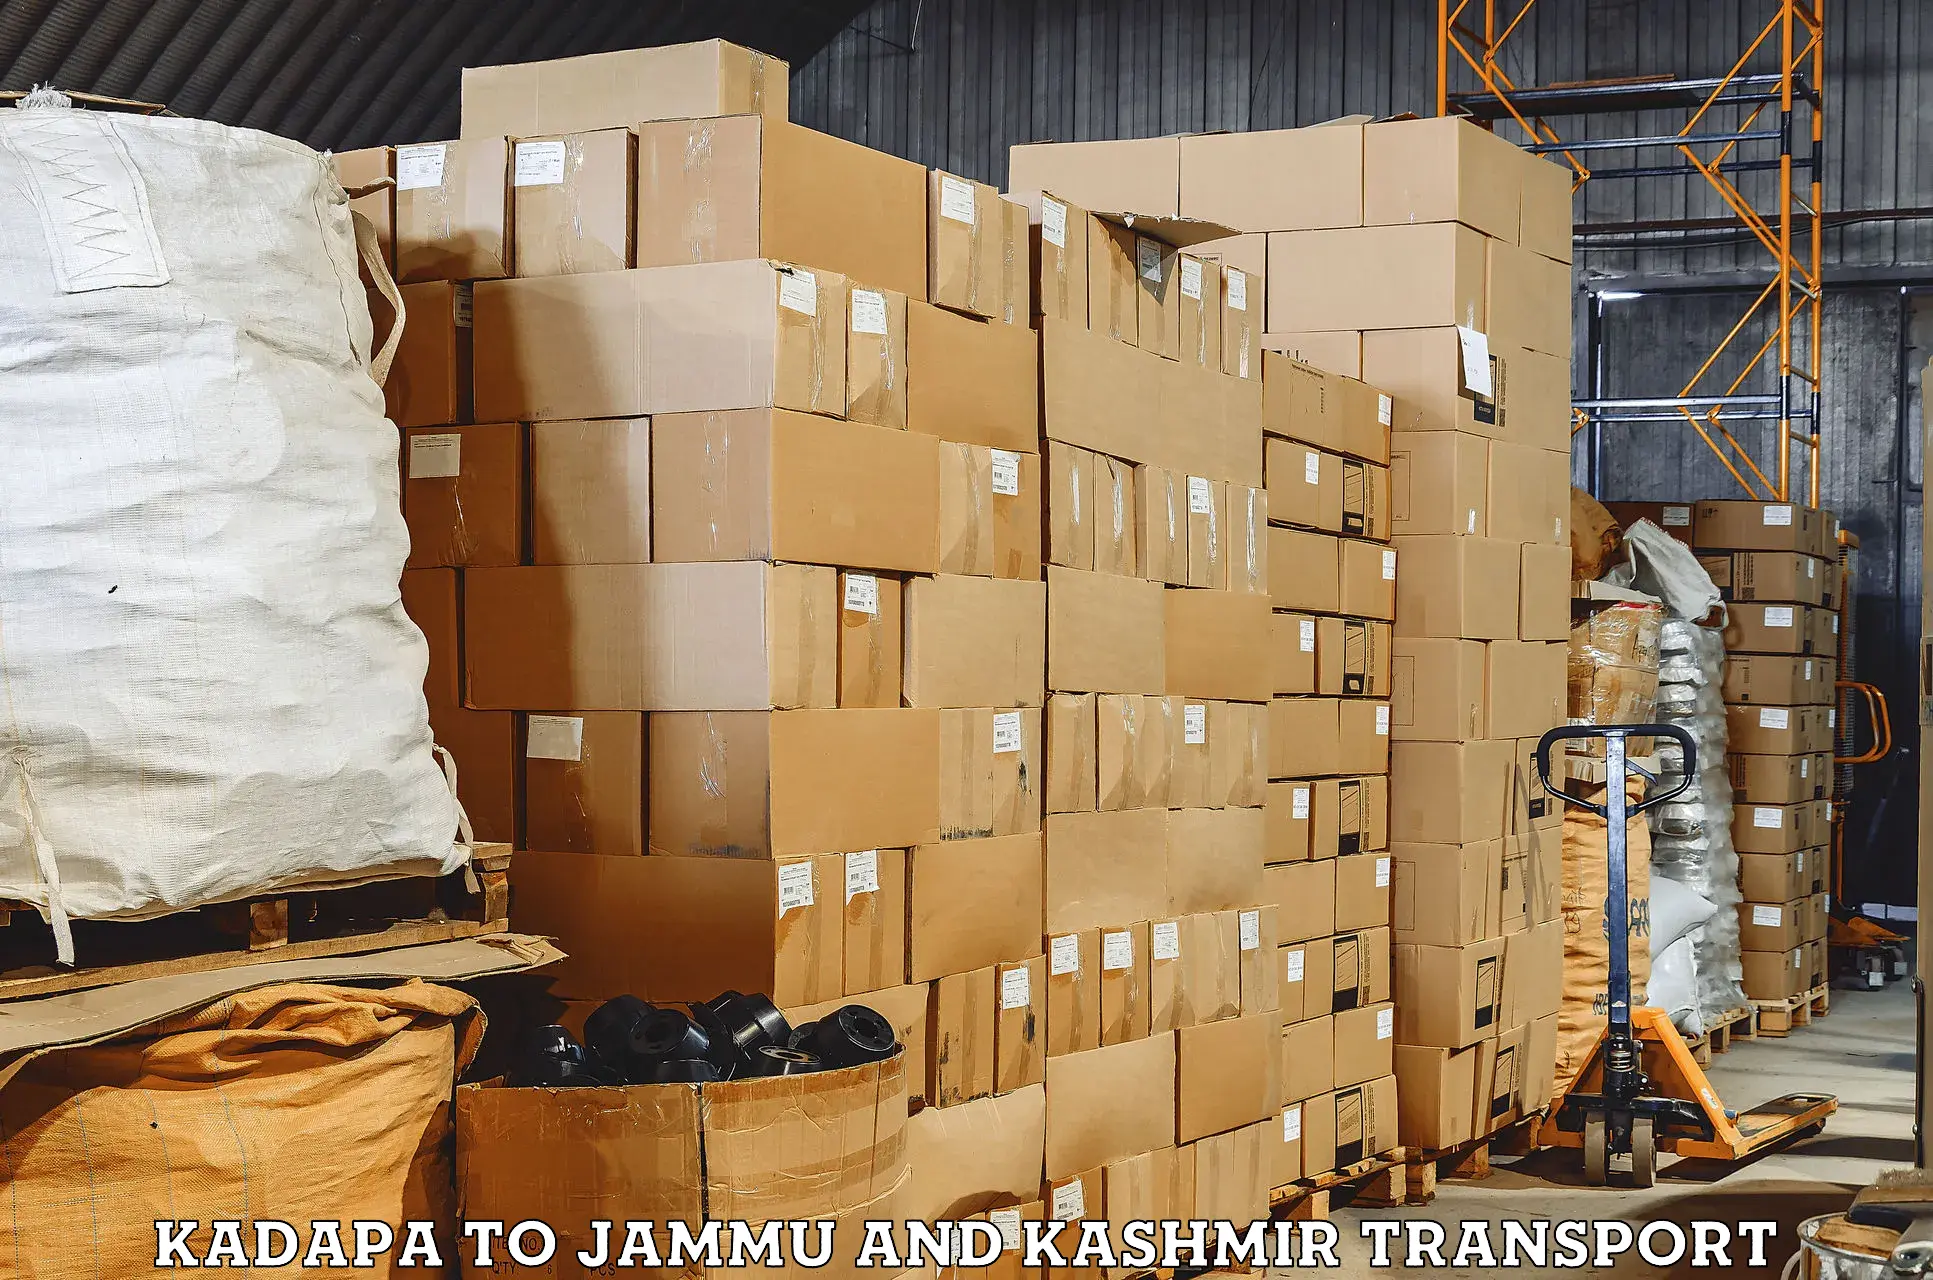 Shipping services Kadapa to Jammu and Kashmir